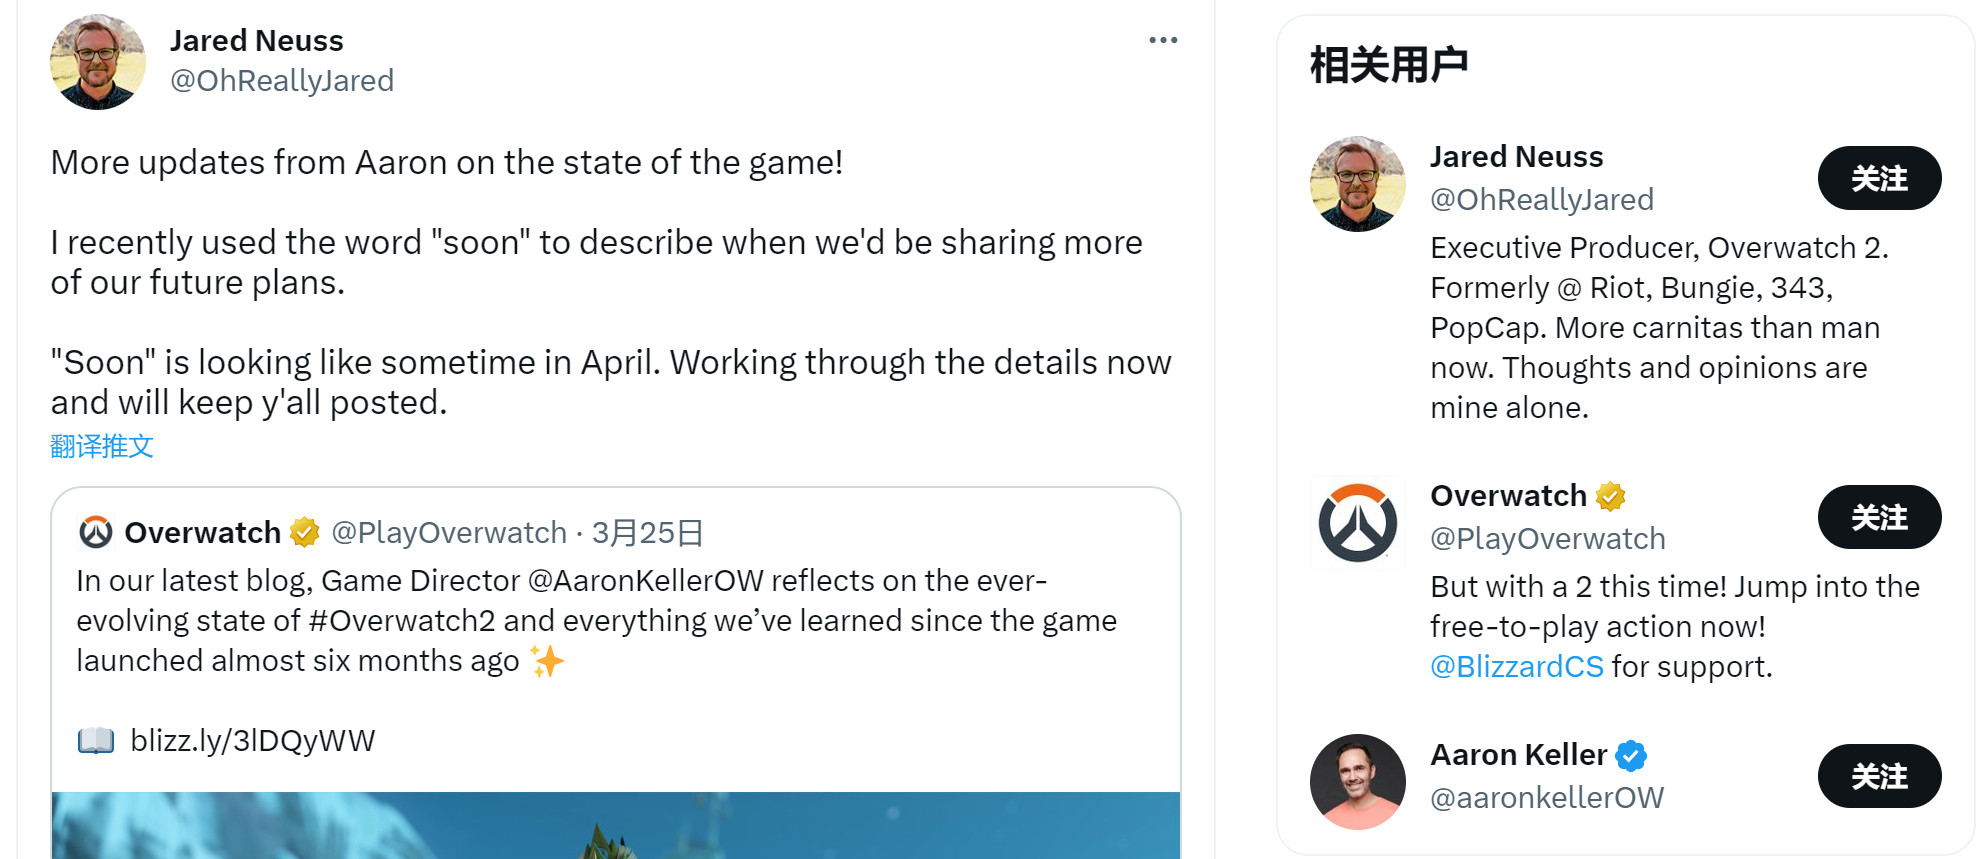 《守望先鋒2》團隊計劃在4月公佈未來更新細節